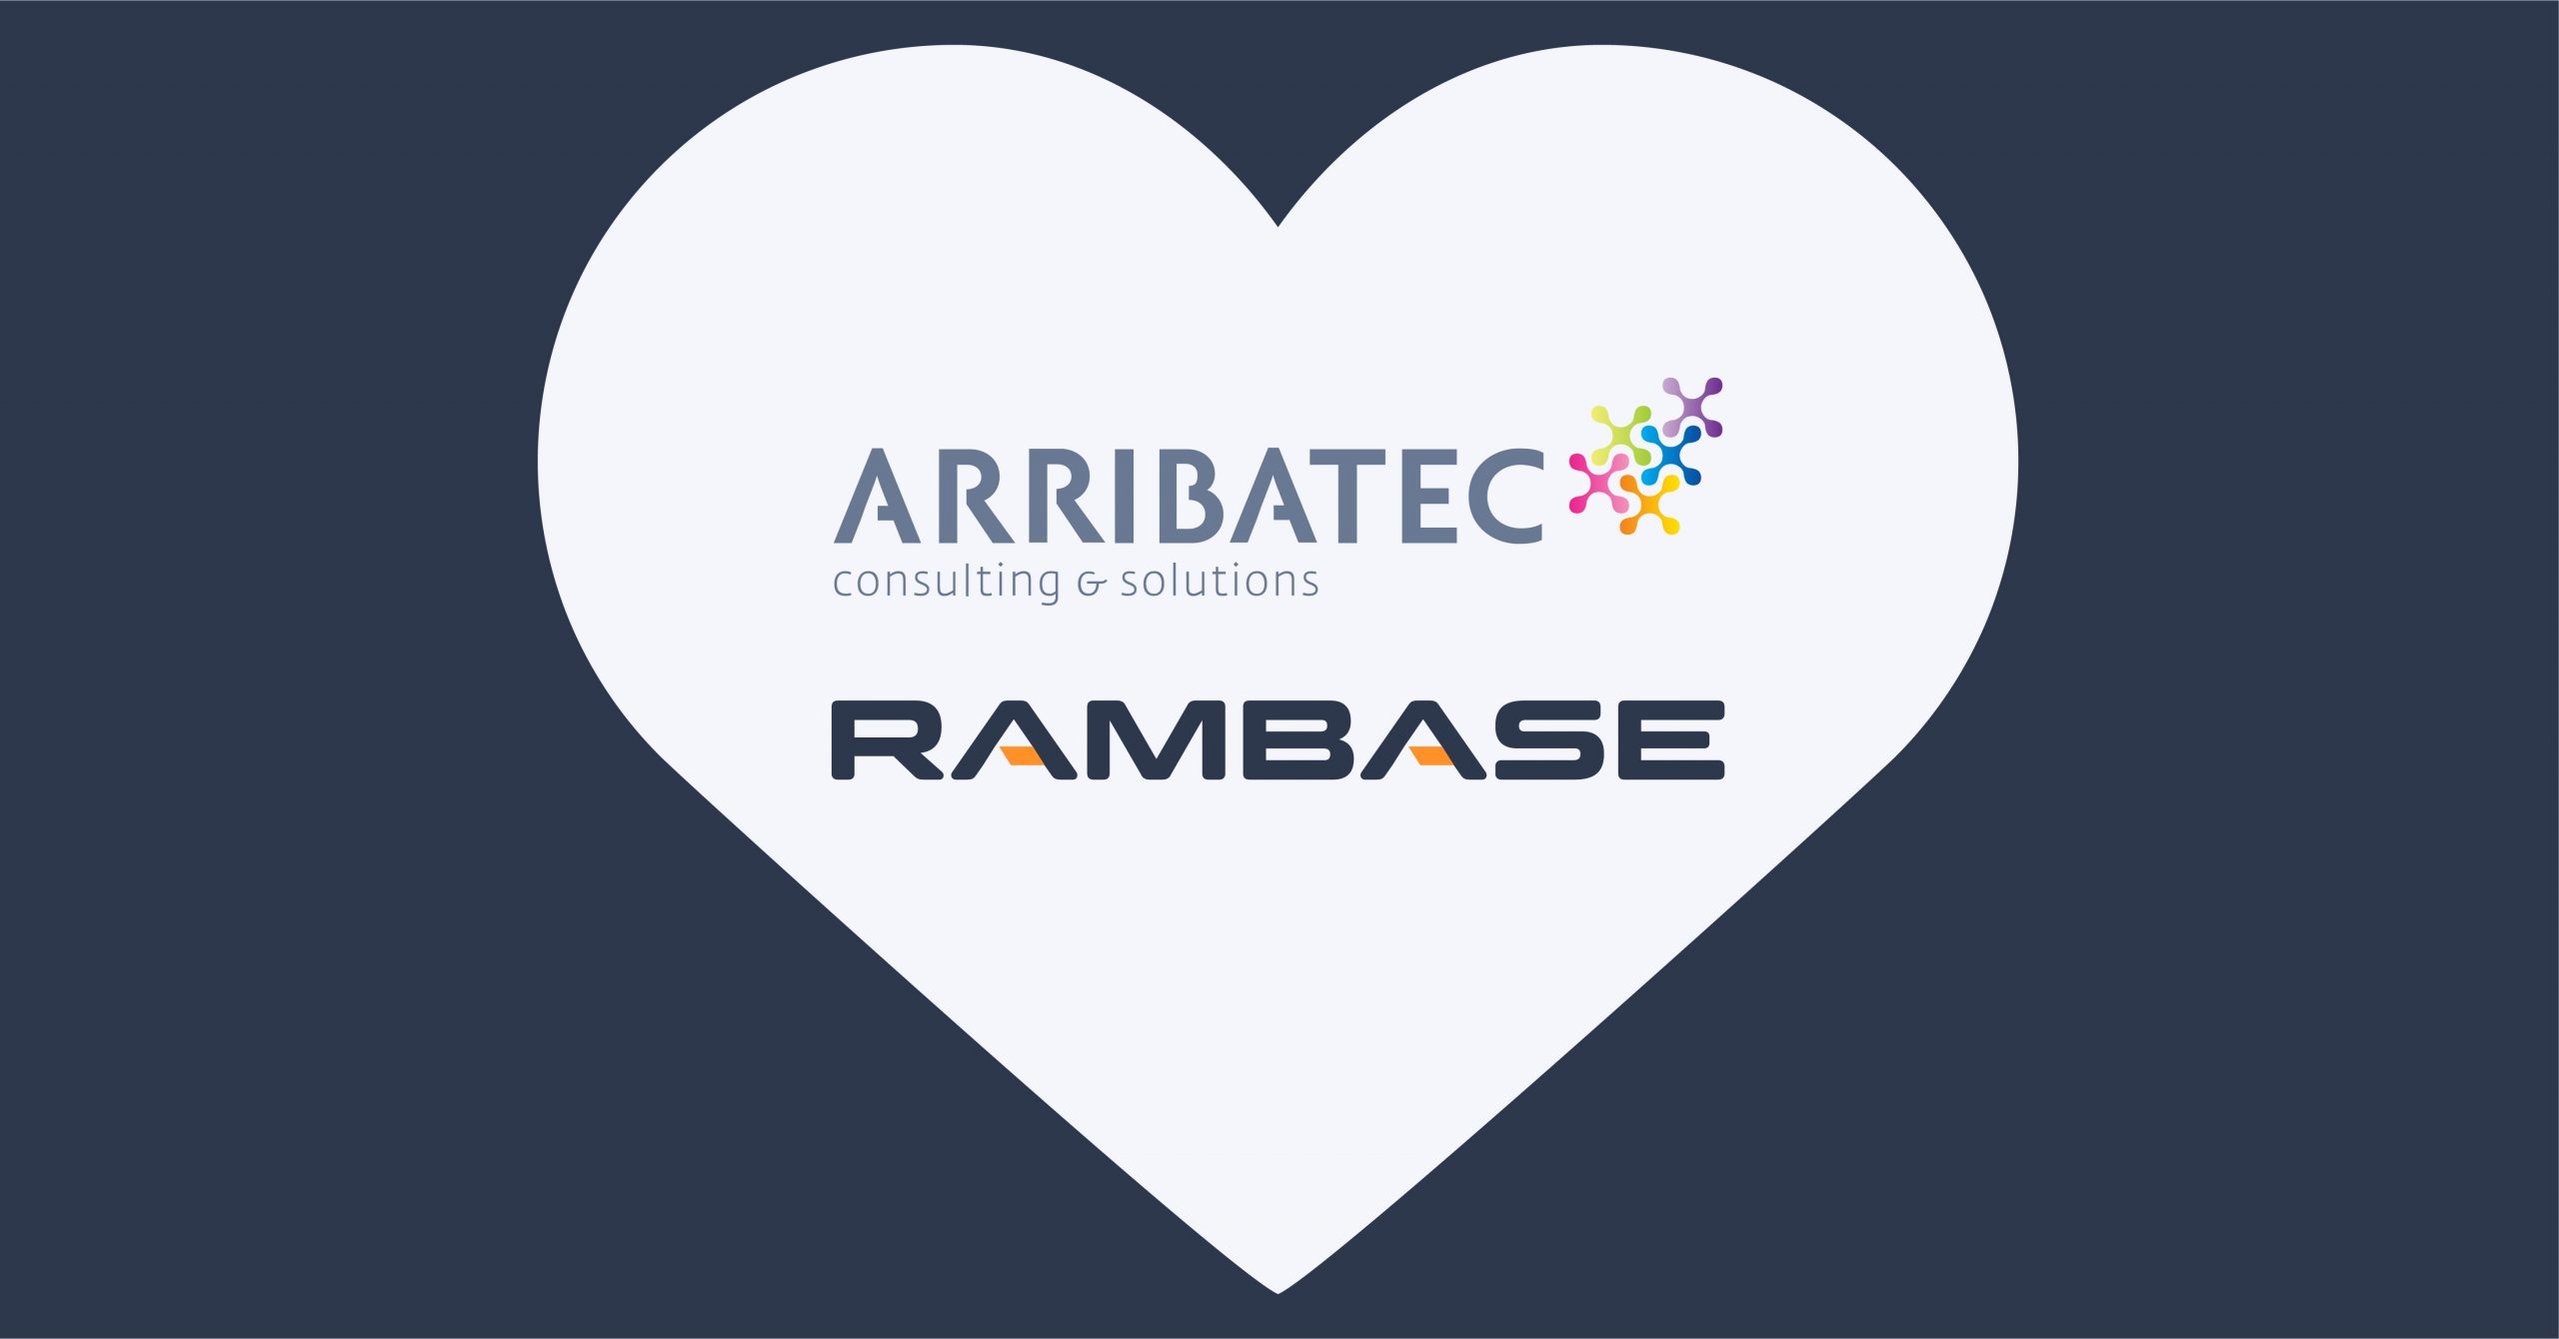 Aribatec is a New partner